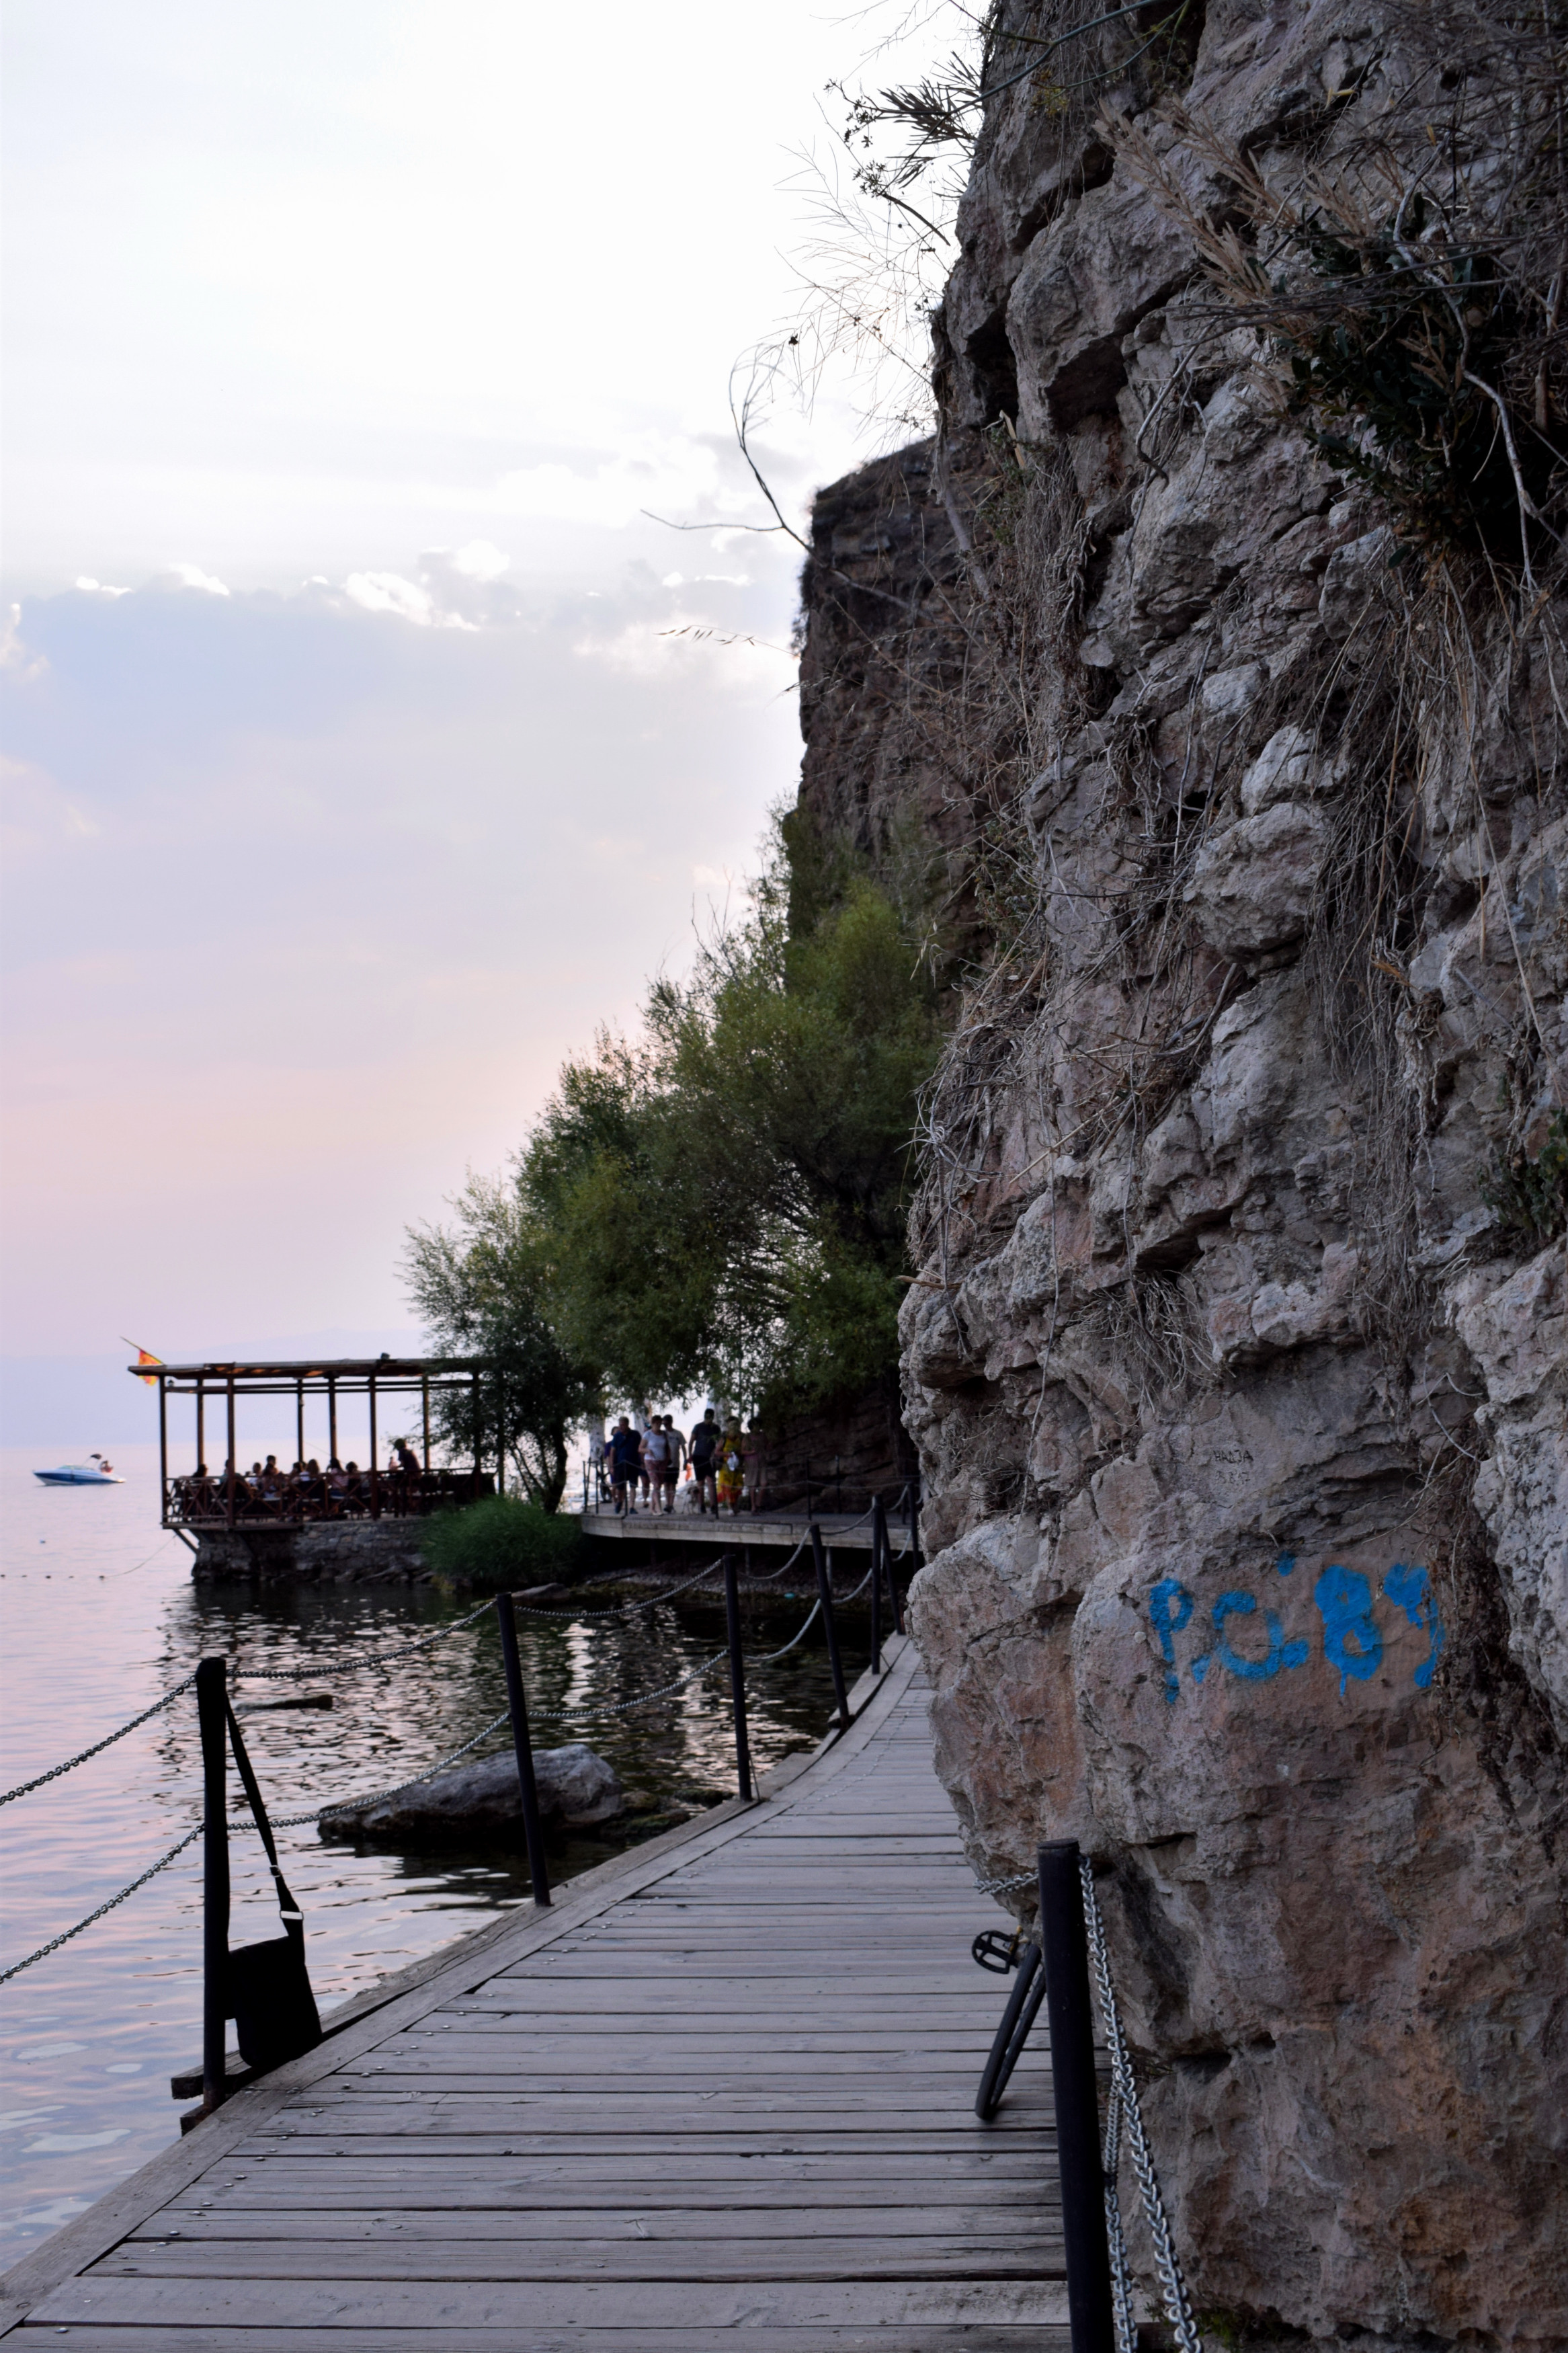 A stég mellett húzódó sziklafal is nagyon szép, érdemes kicsit jobban megnézni a rajta élő növényeket is. <br />A tó nagyon gyorsan mélyül, és Ohrid környékén -legalábbis ahol én jártam- kisebb-nagyobb kövecskék vannak az alján. Érdemes valamilyen tengerjáró cipőt vinni a fürdéshez. Ugyanakkor a műstégek itt általában zsúfolásig tele vannak, így nem a legjobb élmény itt fürdeni. 